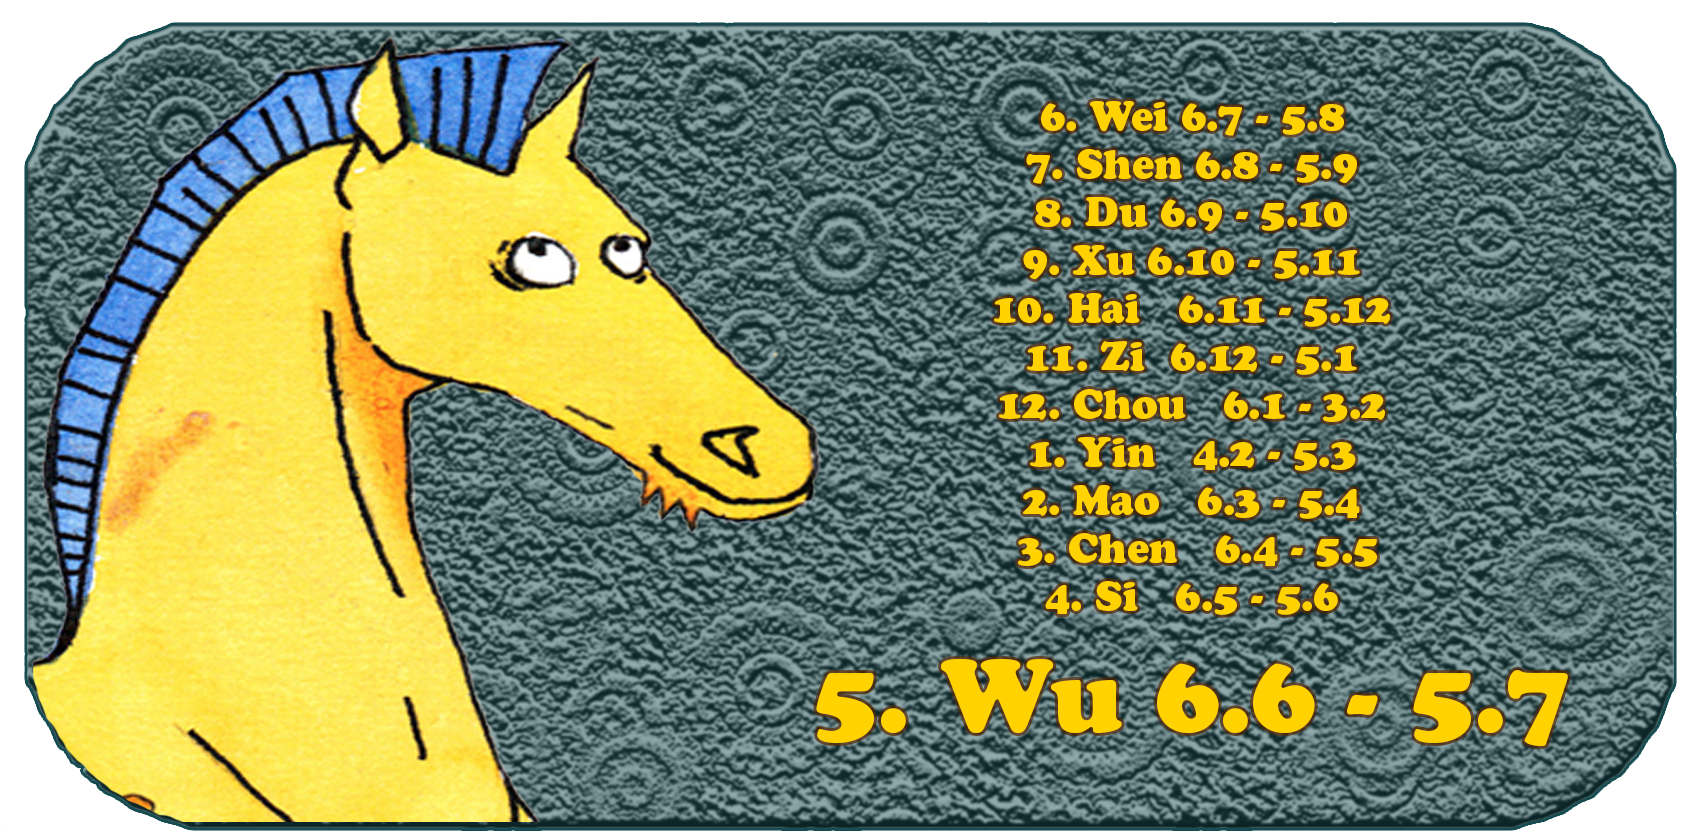 Kiinalainen horoskooppi | Kaksitoista kiinalaista eläintä | Hevonen, kesäkuu, kuukausi 5, Wu